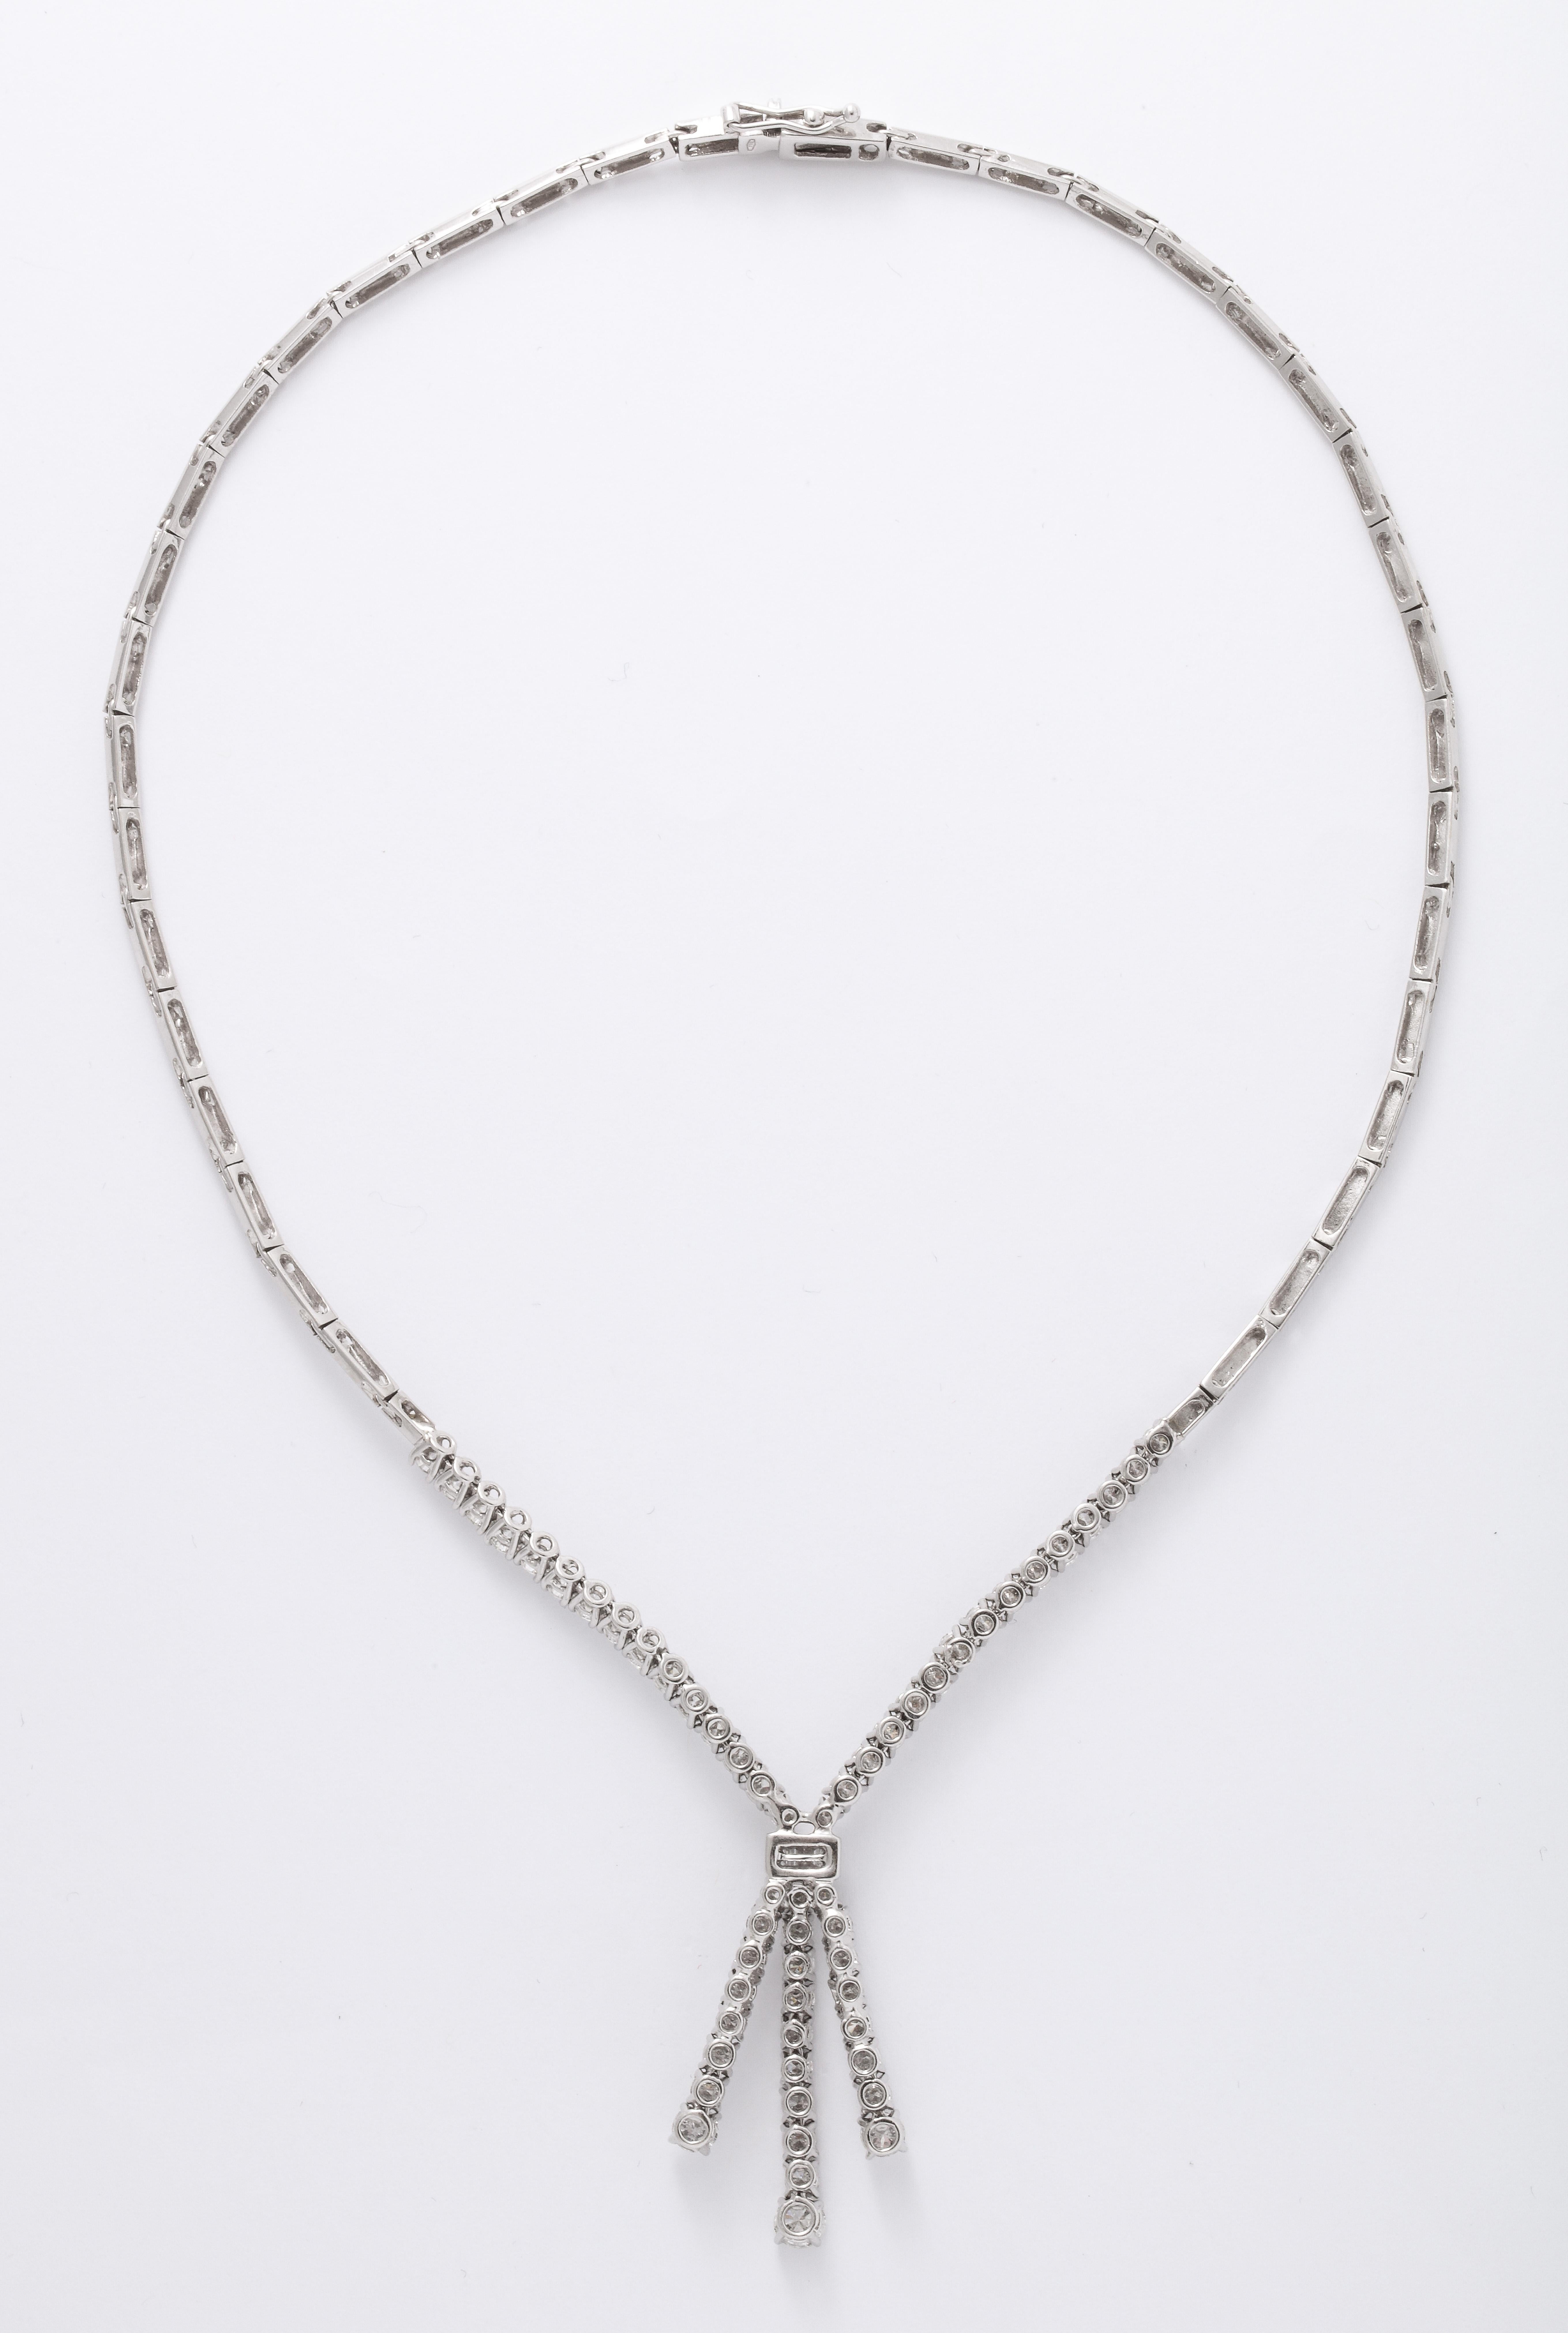 Women's or Men's Diamond Drop Necklace For Sale